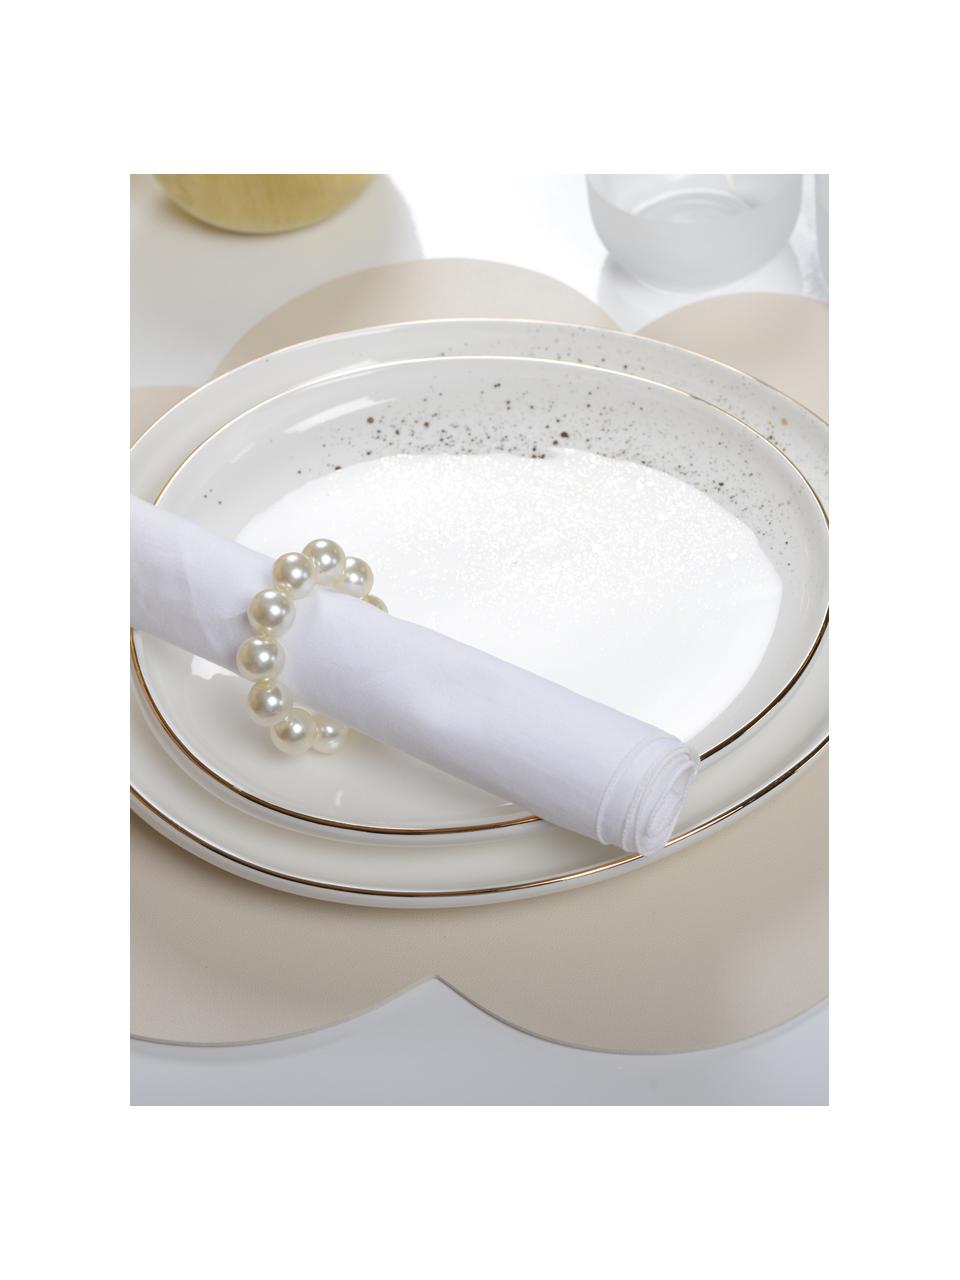 Rond de serviette de table Perle, 4 pièces, Plastique, Blanc aux reflets nacrés, Ø 6 cm